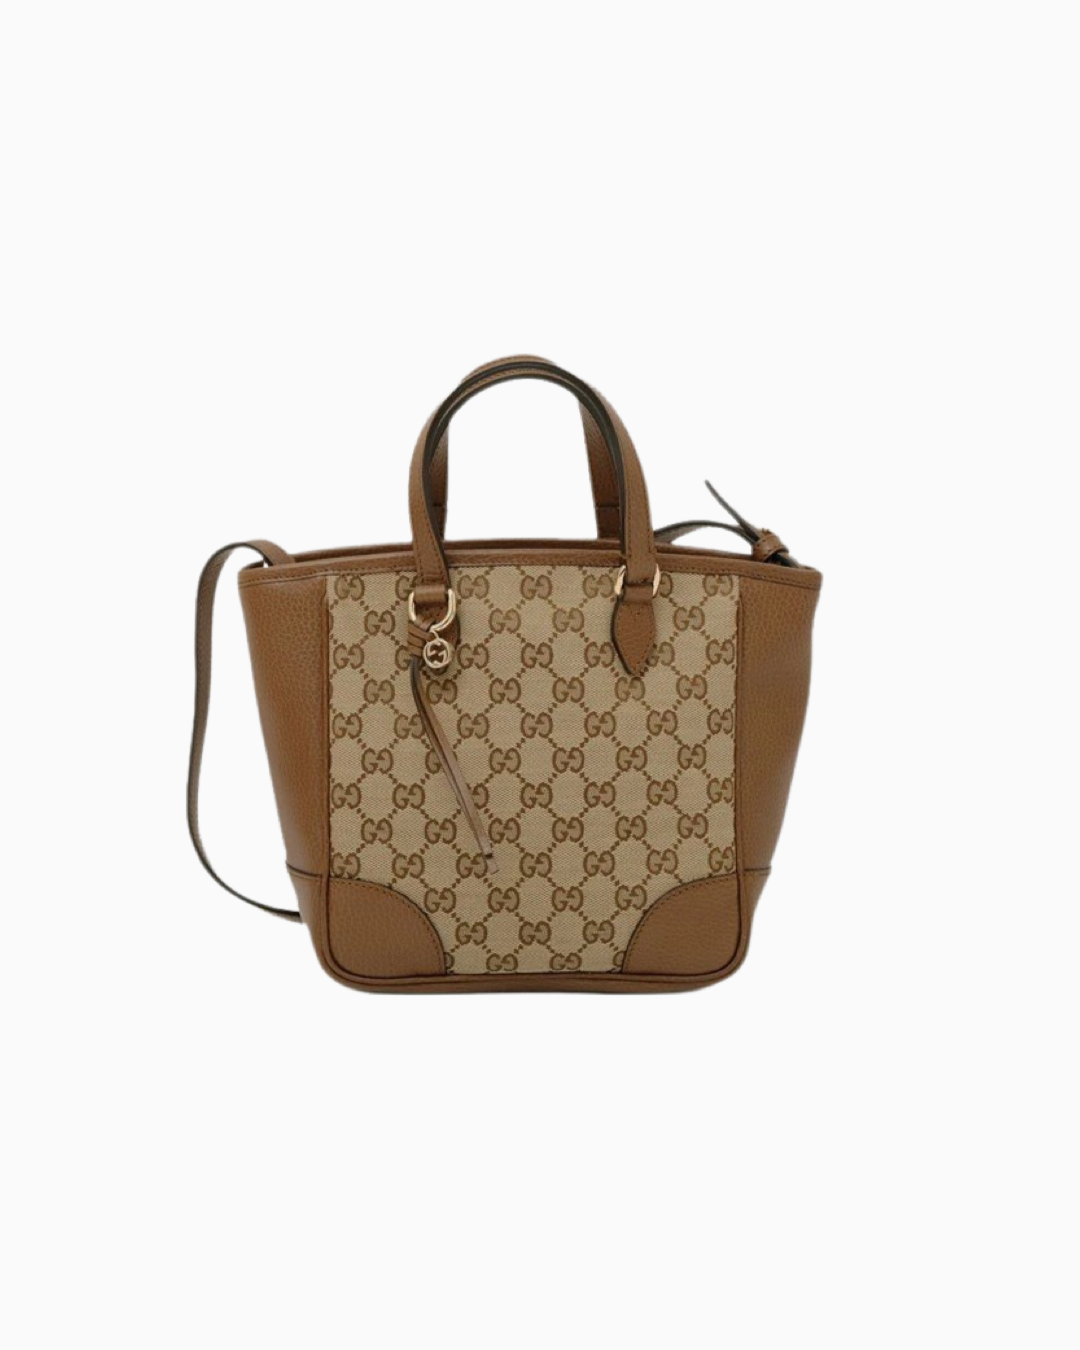 Gucci Bree GG Canvas Mini Tote Bag